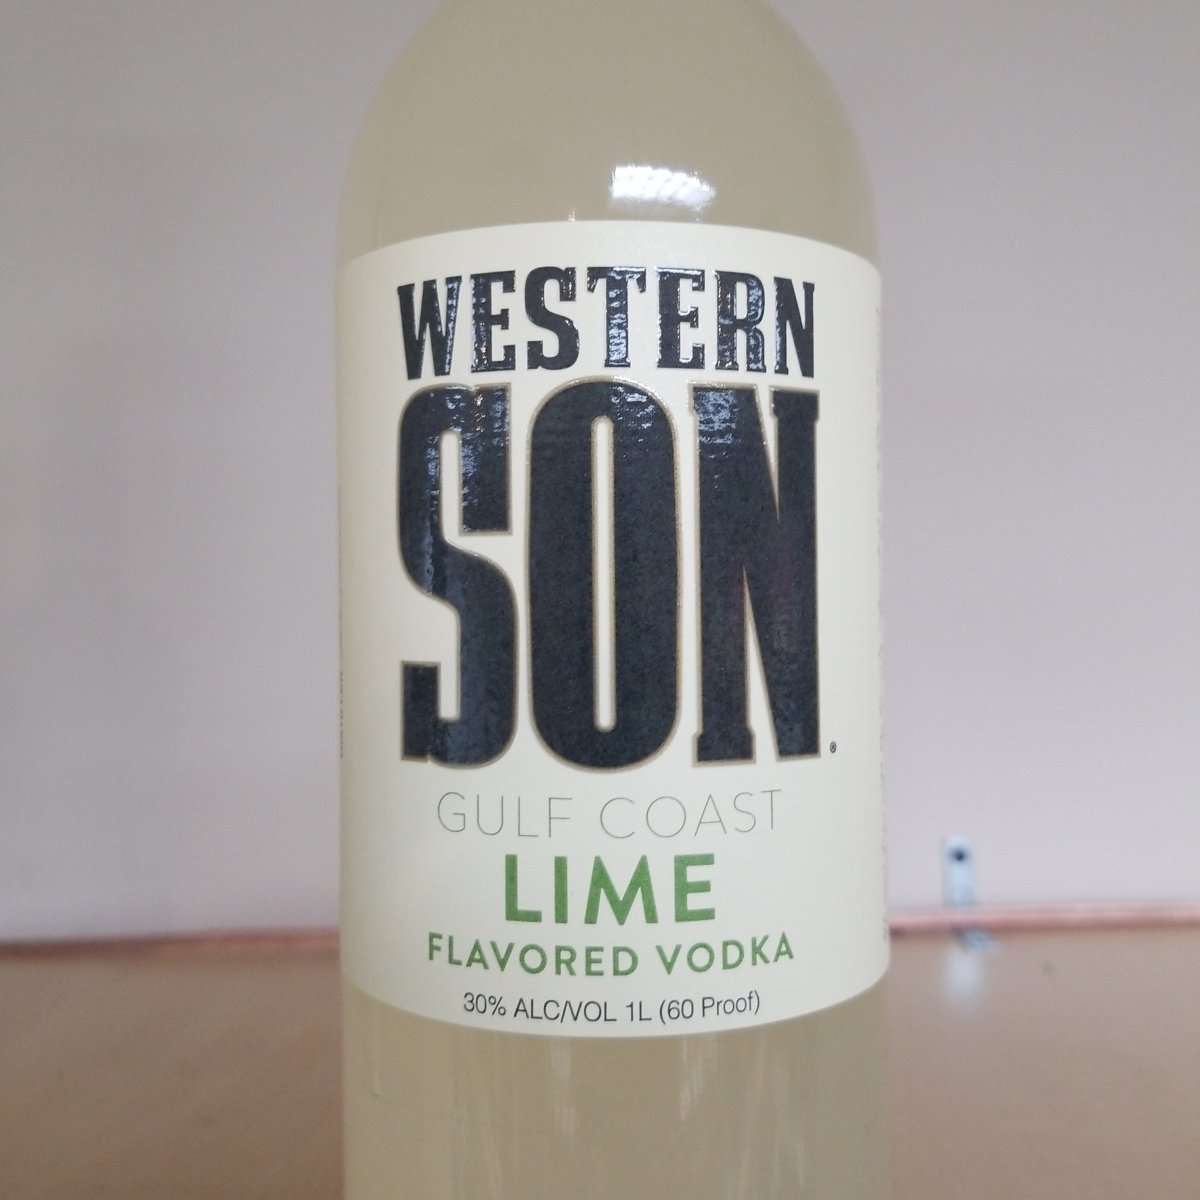 Grey Goose Vodka NV 1.0 L.